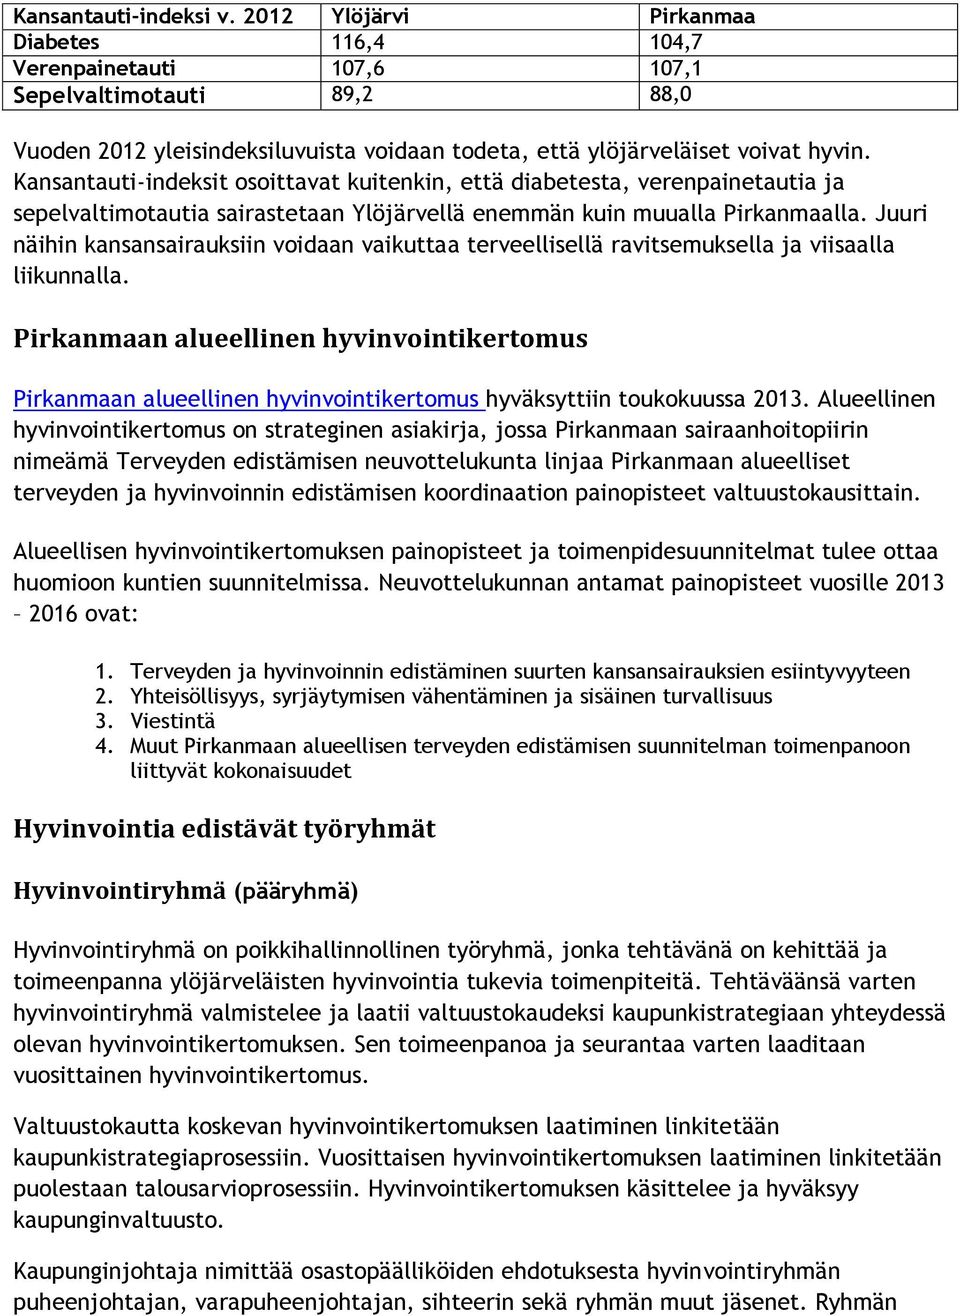 Kansantauti-indeksit osoittavat kuitenkin, että diabetesta, verenpainetautia ja sepelvaltimotautia sairastetaan Ylöjärvellä enemmän kuin muualla Pirkanmaalla.